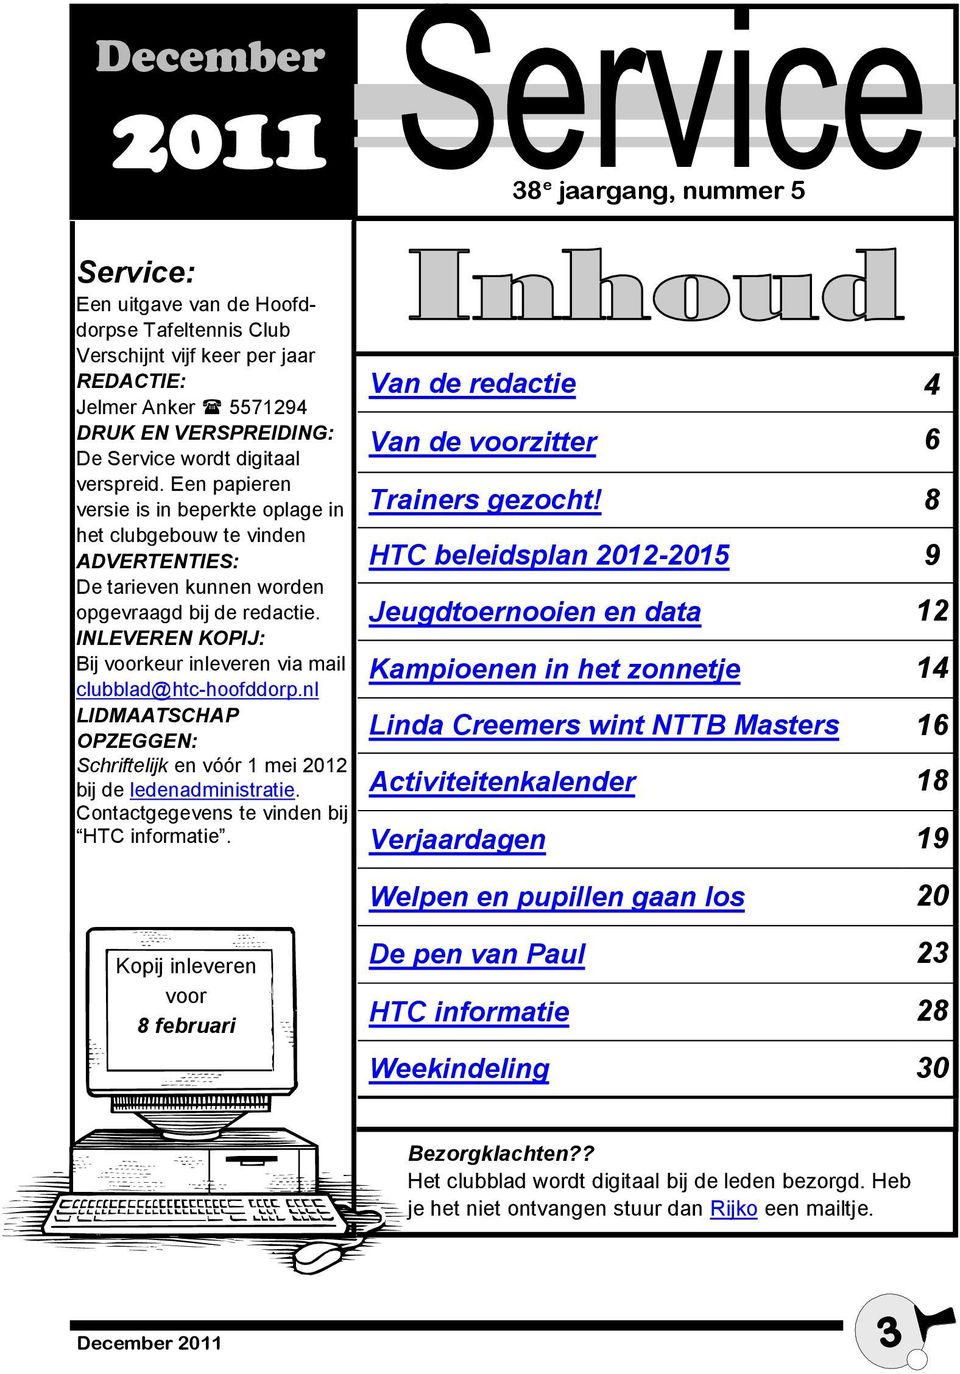 INLEVEREN KOPIJ: Bij voorkeur inleveren via mail clubblad@htc-hoofddorp.nl LIDMAATSCHAP OPZEGGEN: Schriftelijk en vóór 1 mei 2012 bij de ledenadministratie.